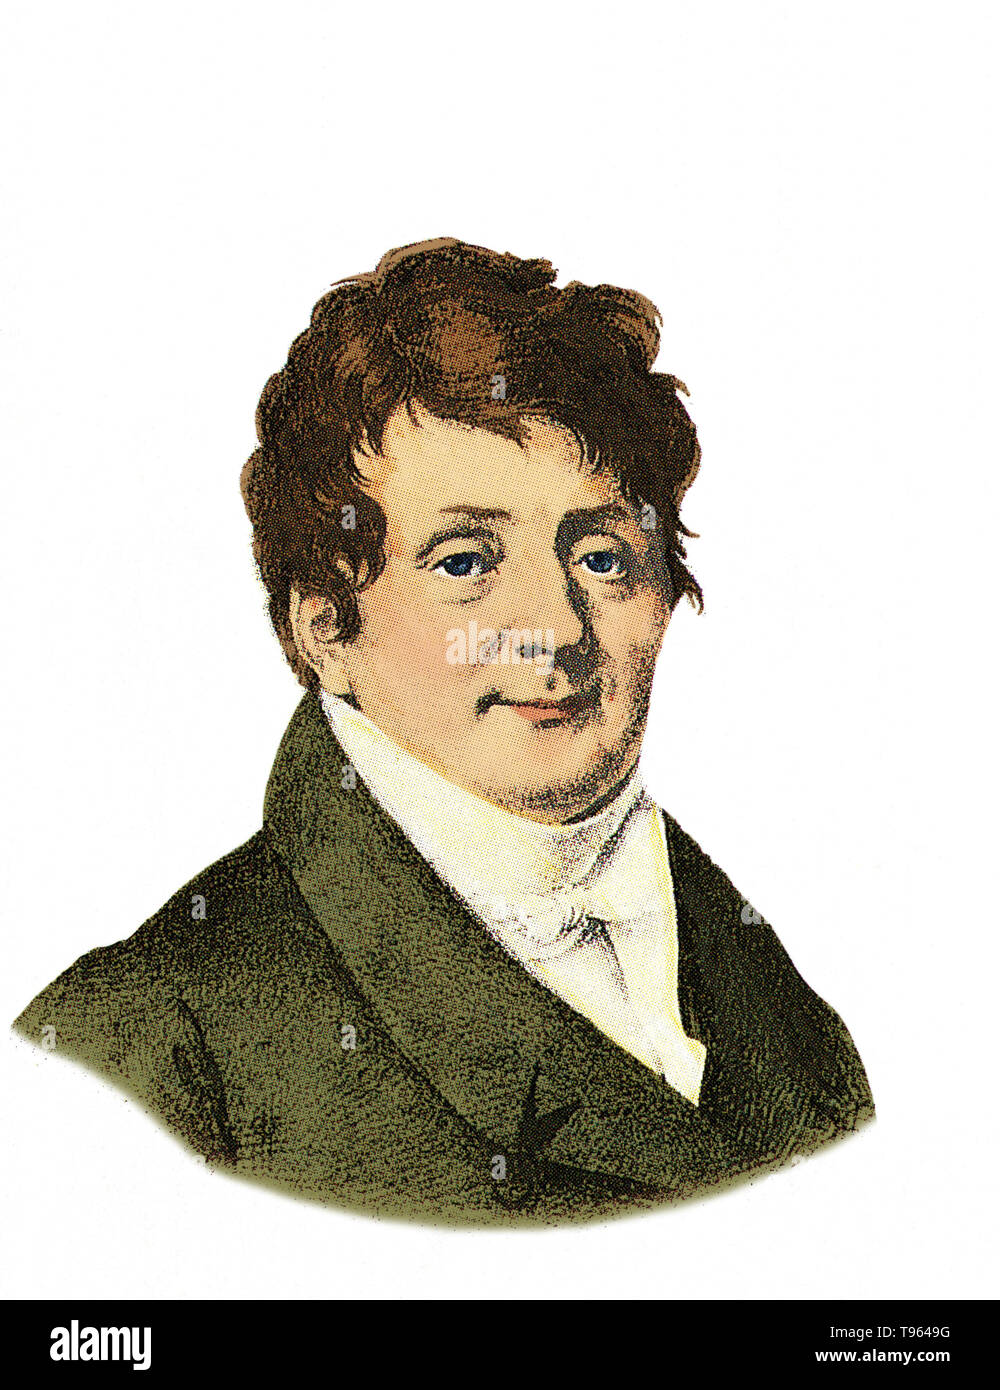 Jean Baptiste Joseph Fourier (1768-1830) était un mathématicien et physicien français connu pour l'ouverture de l'enquête de série de Fourier et leurs applications à des problèmes de transfert de chaleur et de vibrations. La série de Fourier est une série infinie dont les termes sont des constantes multipliées par fonctions sinus et cosinus et qui peut, en cas de convergence uniforme, à environ une grande variété de fonctions. La transformation de Fourier et de Fourier sont aussi nommées en son honneur. Banque D'Images